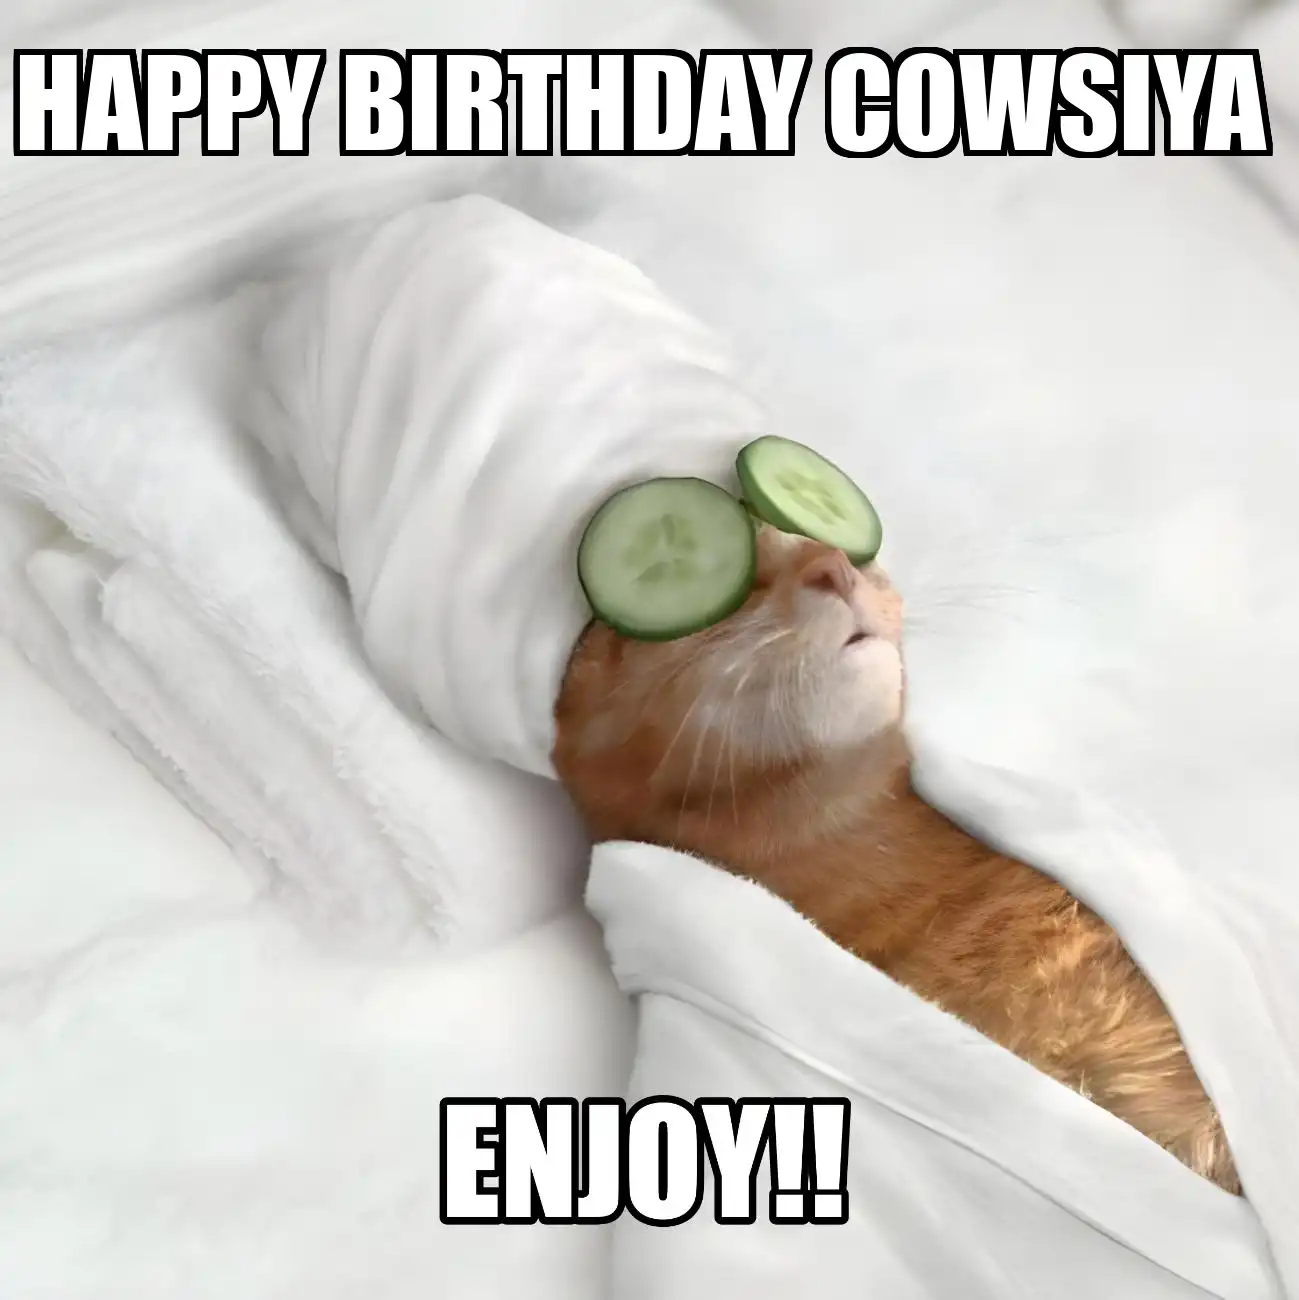 Happy Birthday Cowsiya Enjoy Cat Meme